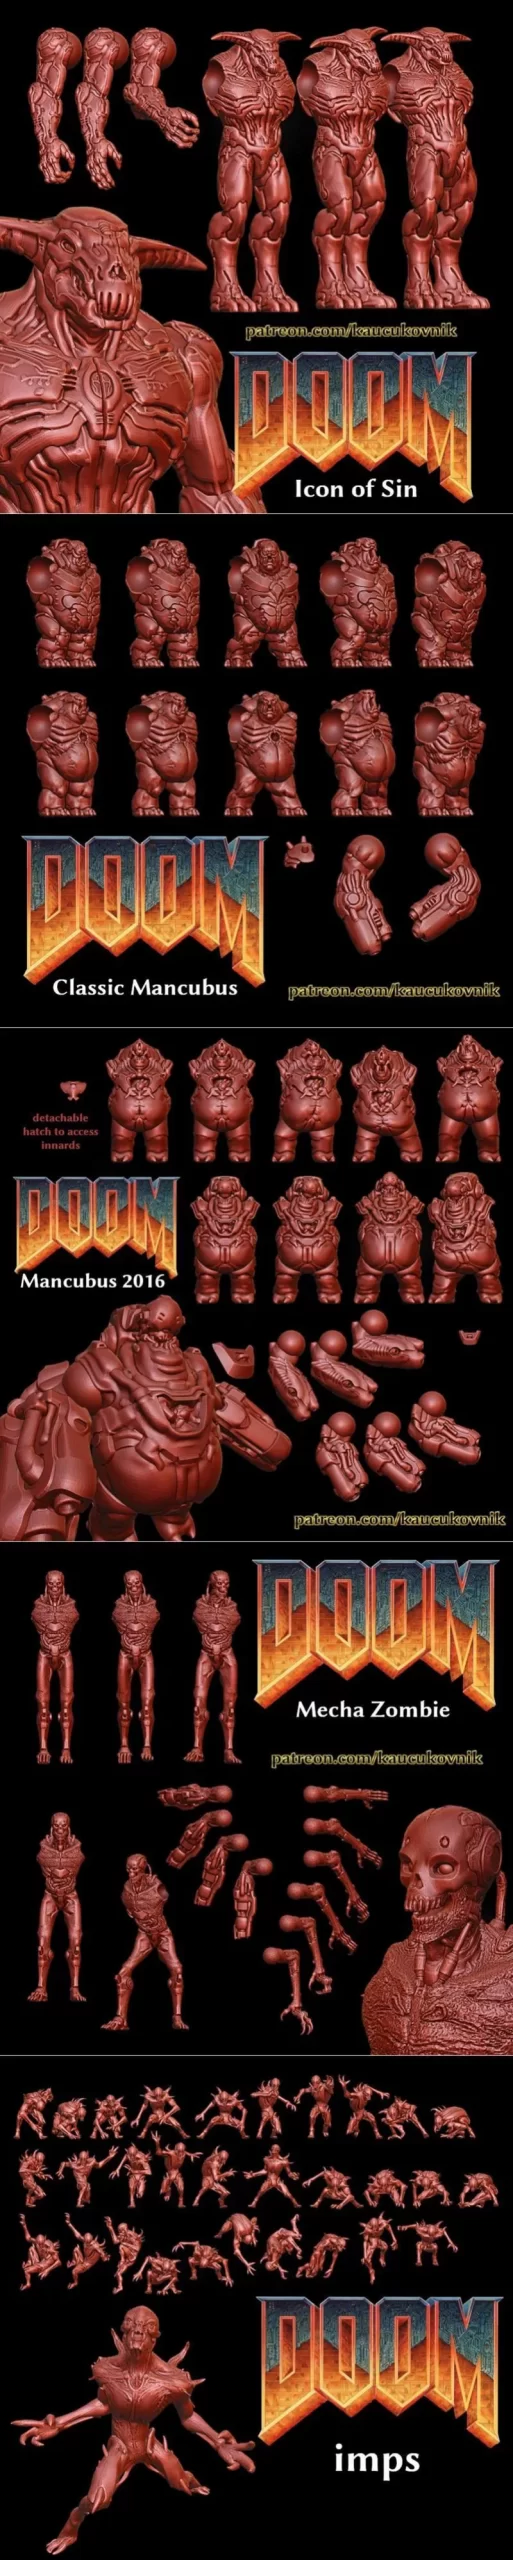 Doom Miniatures